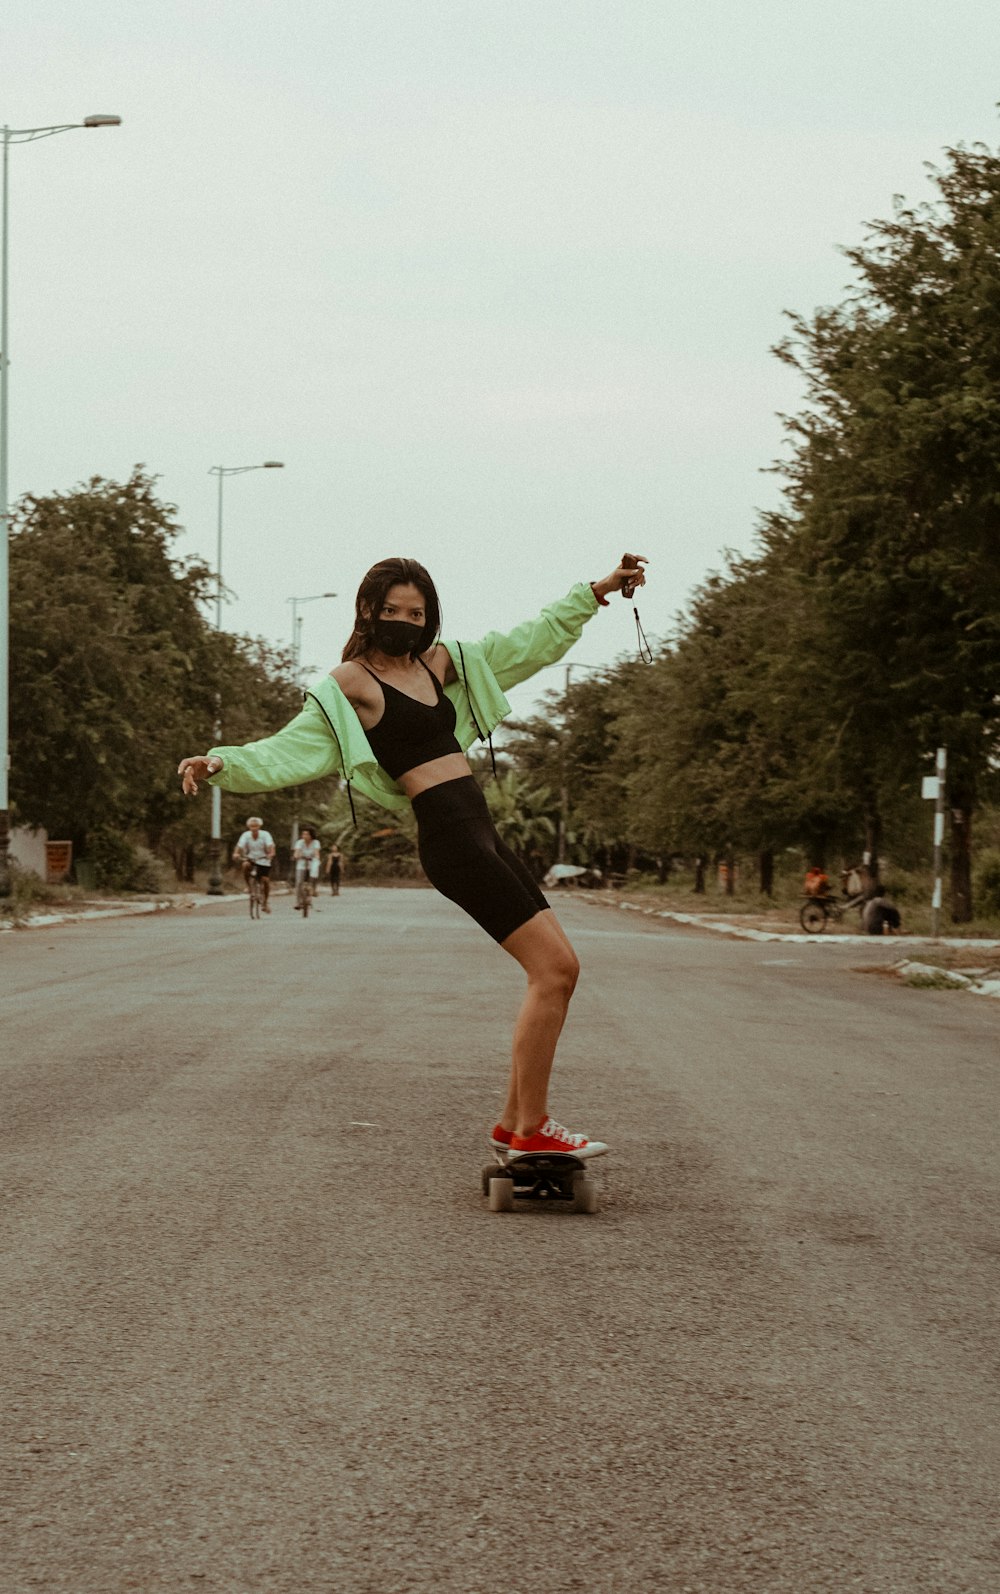 녹색 긴팔 셔츠와 검은 반바지를 입은 여자가 낮 동안 도로를 달리고 있다